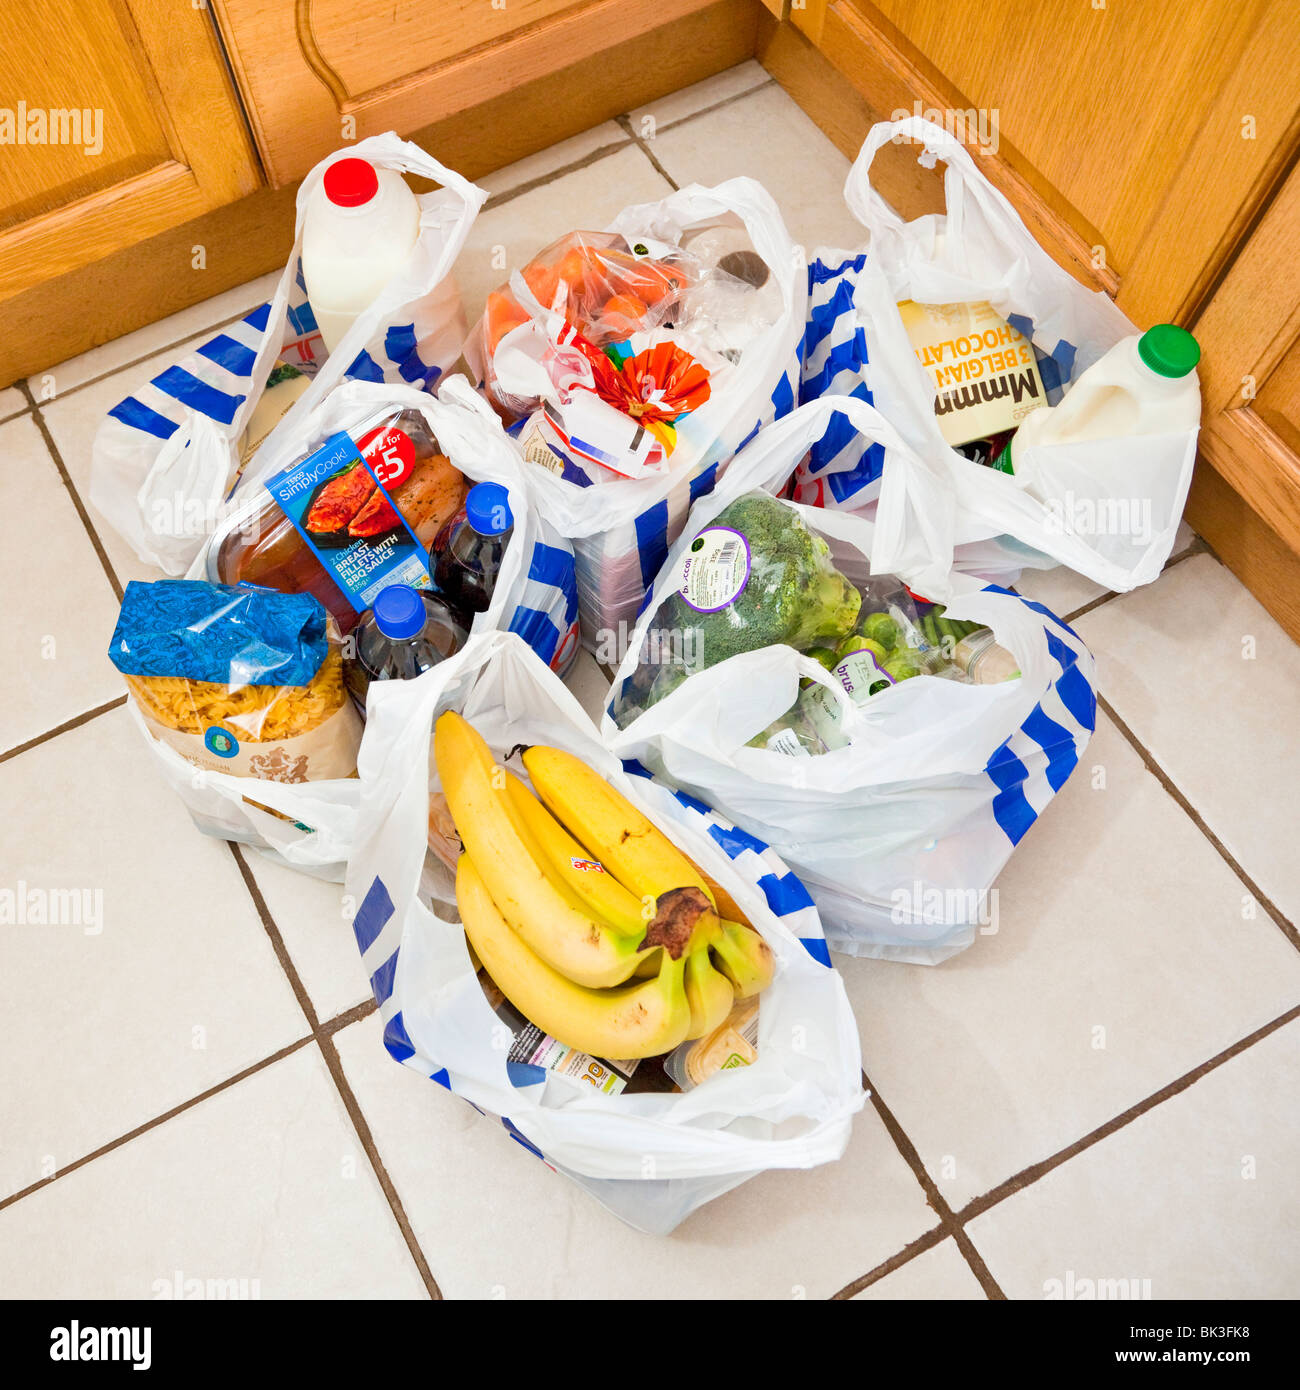 Drogheria sacchetti, sacchi da asporto, borse per la spesa su un pavimento della cucina, England, Regno Unito Foto Stock